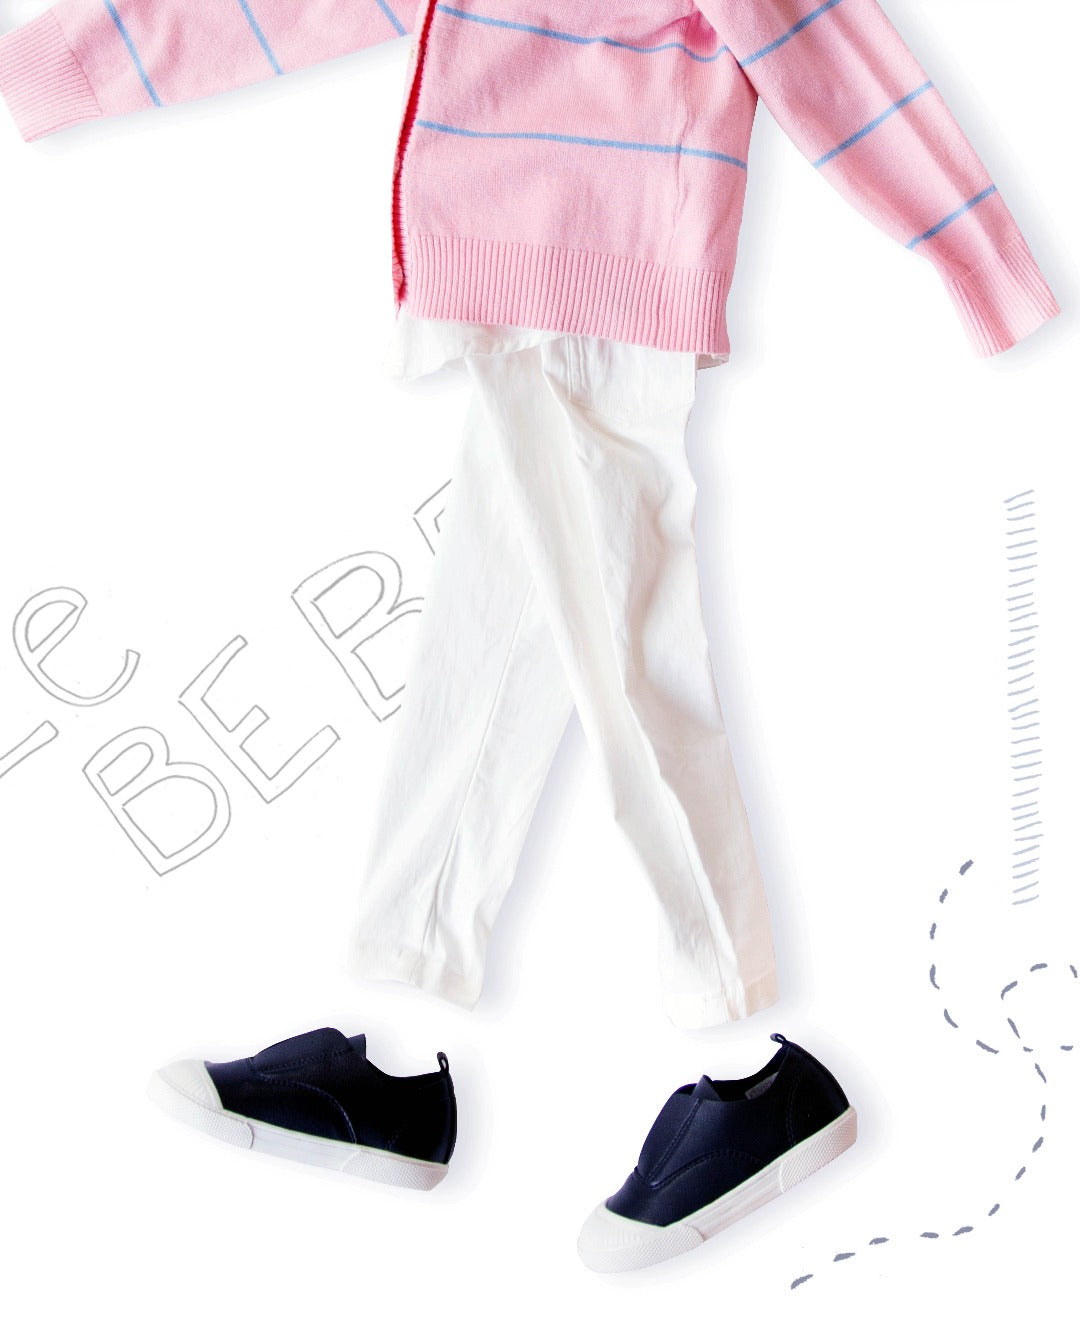 bubblegum pink cardigan with powder blue stripes